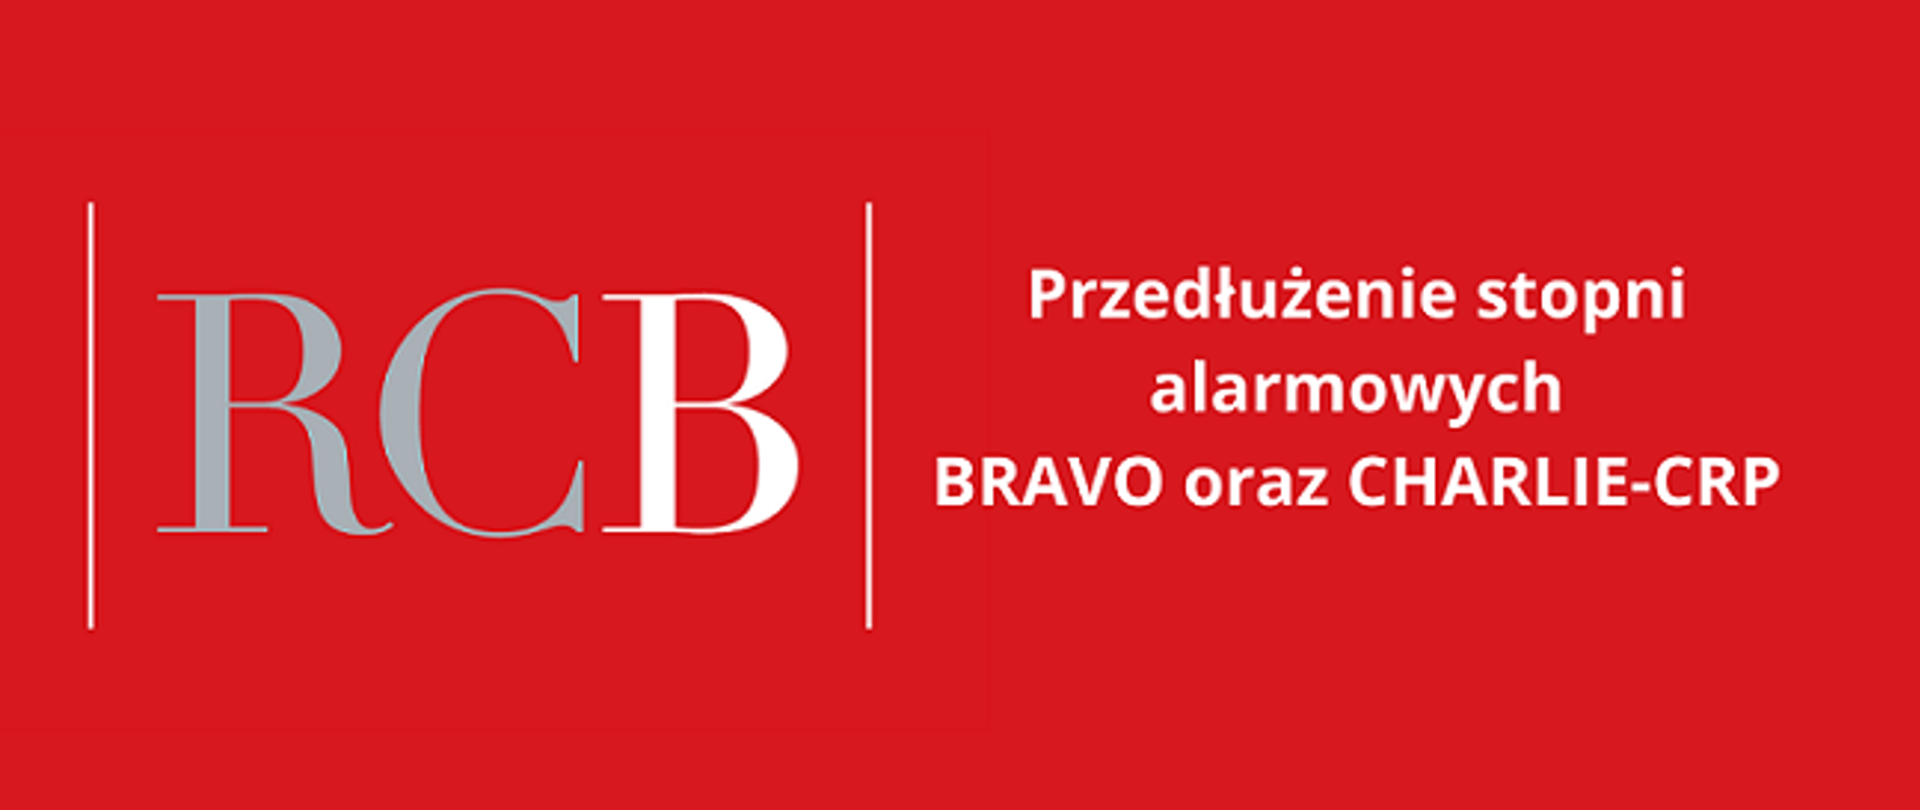 Przedłużenie stopni alarmowych BRAVO i CHARLIE-CRP